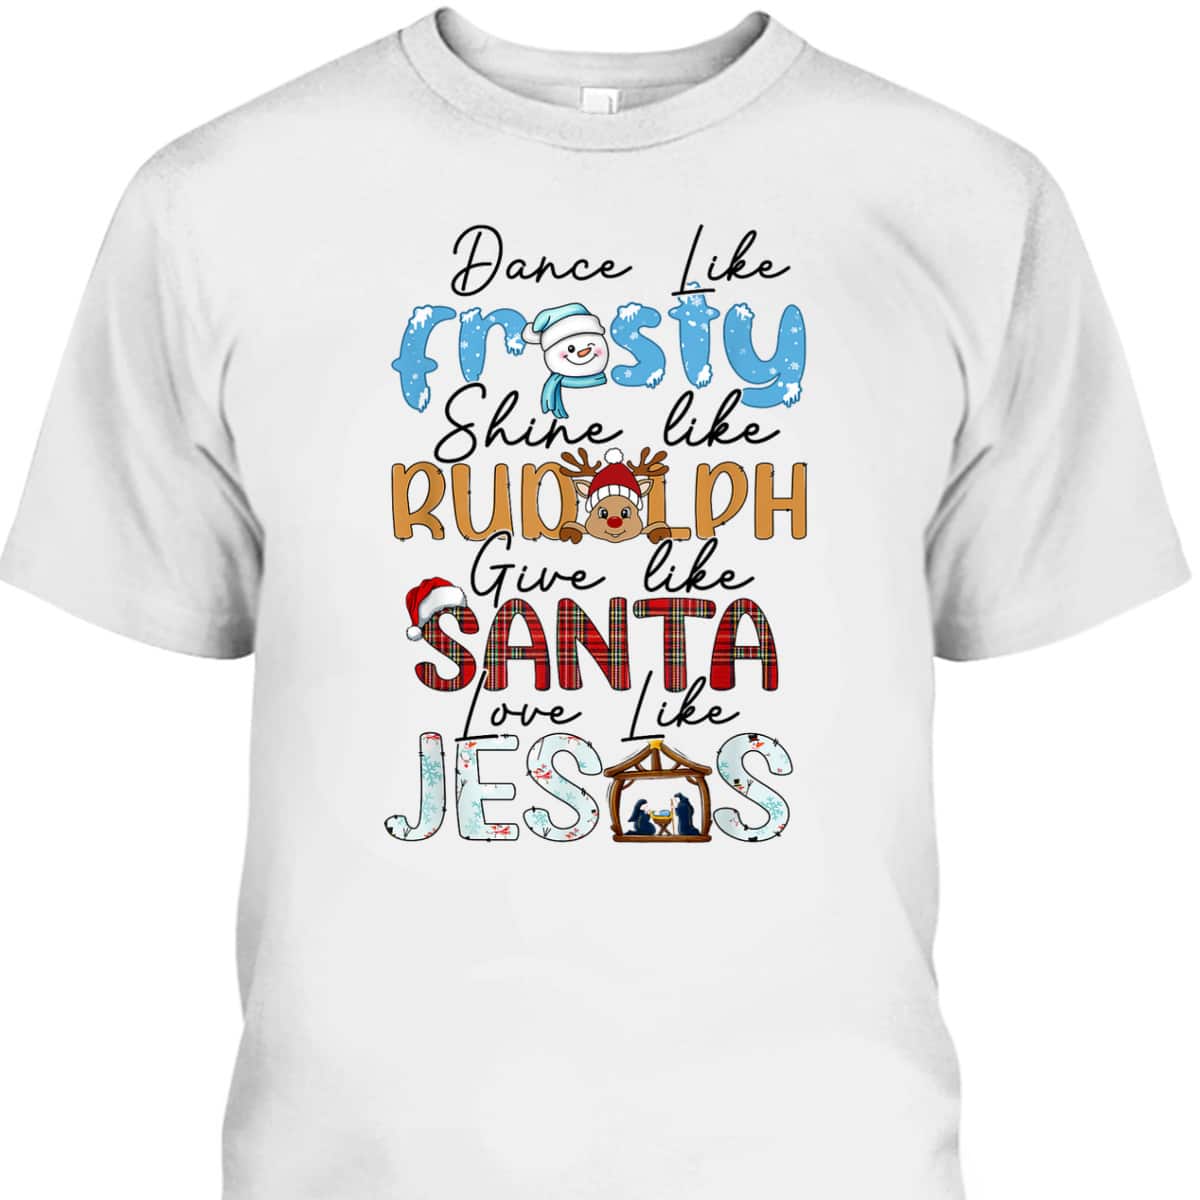 Dance Like Frosty Love Like Jesus Christians Christmas T-Shirt